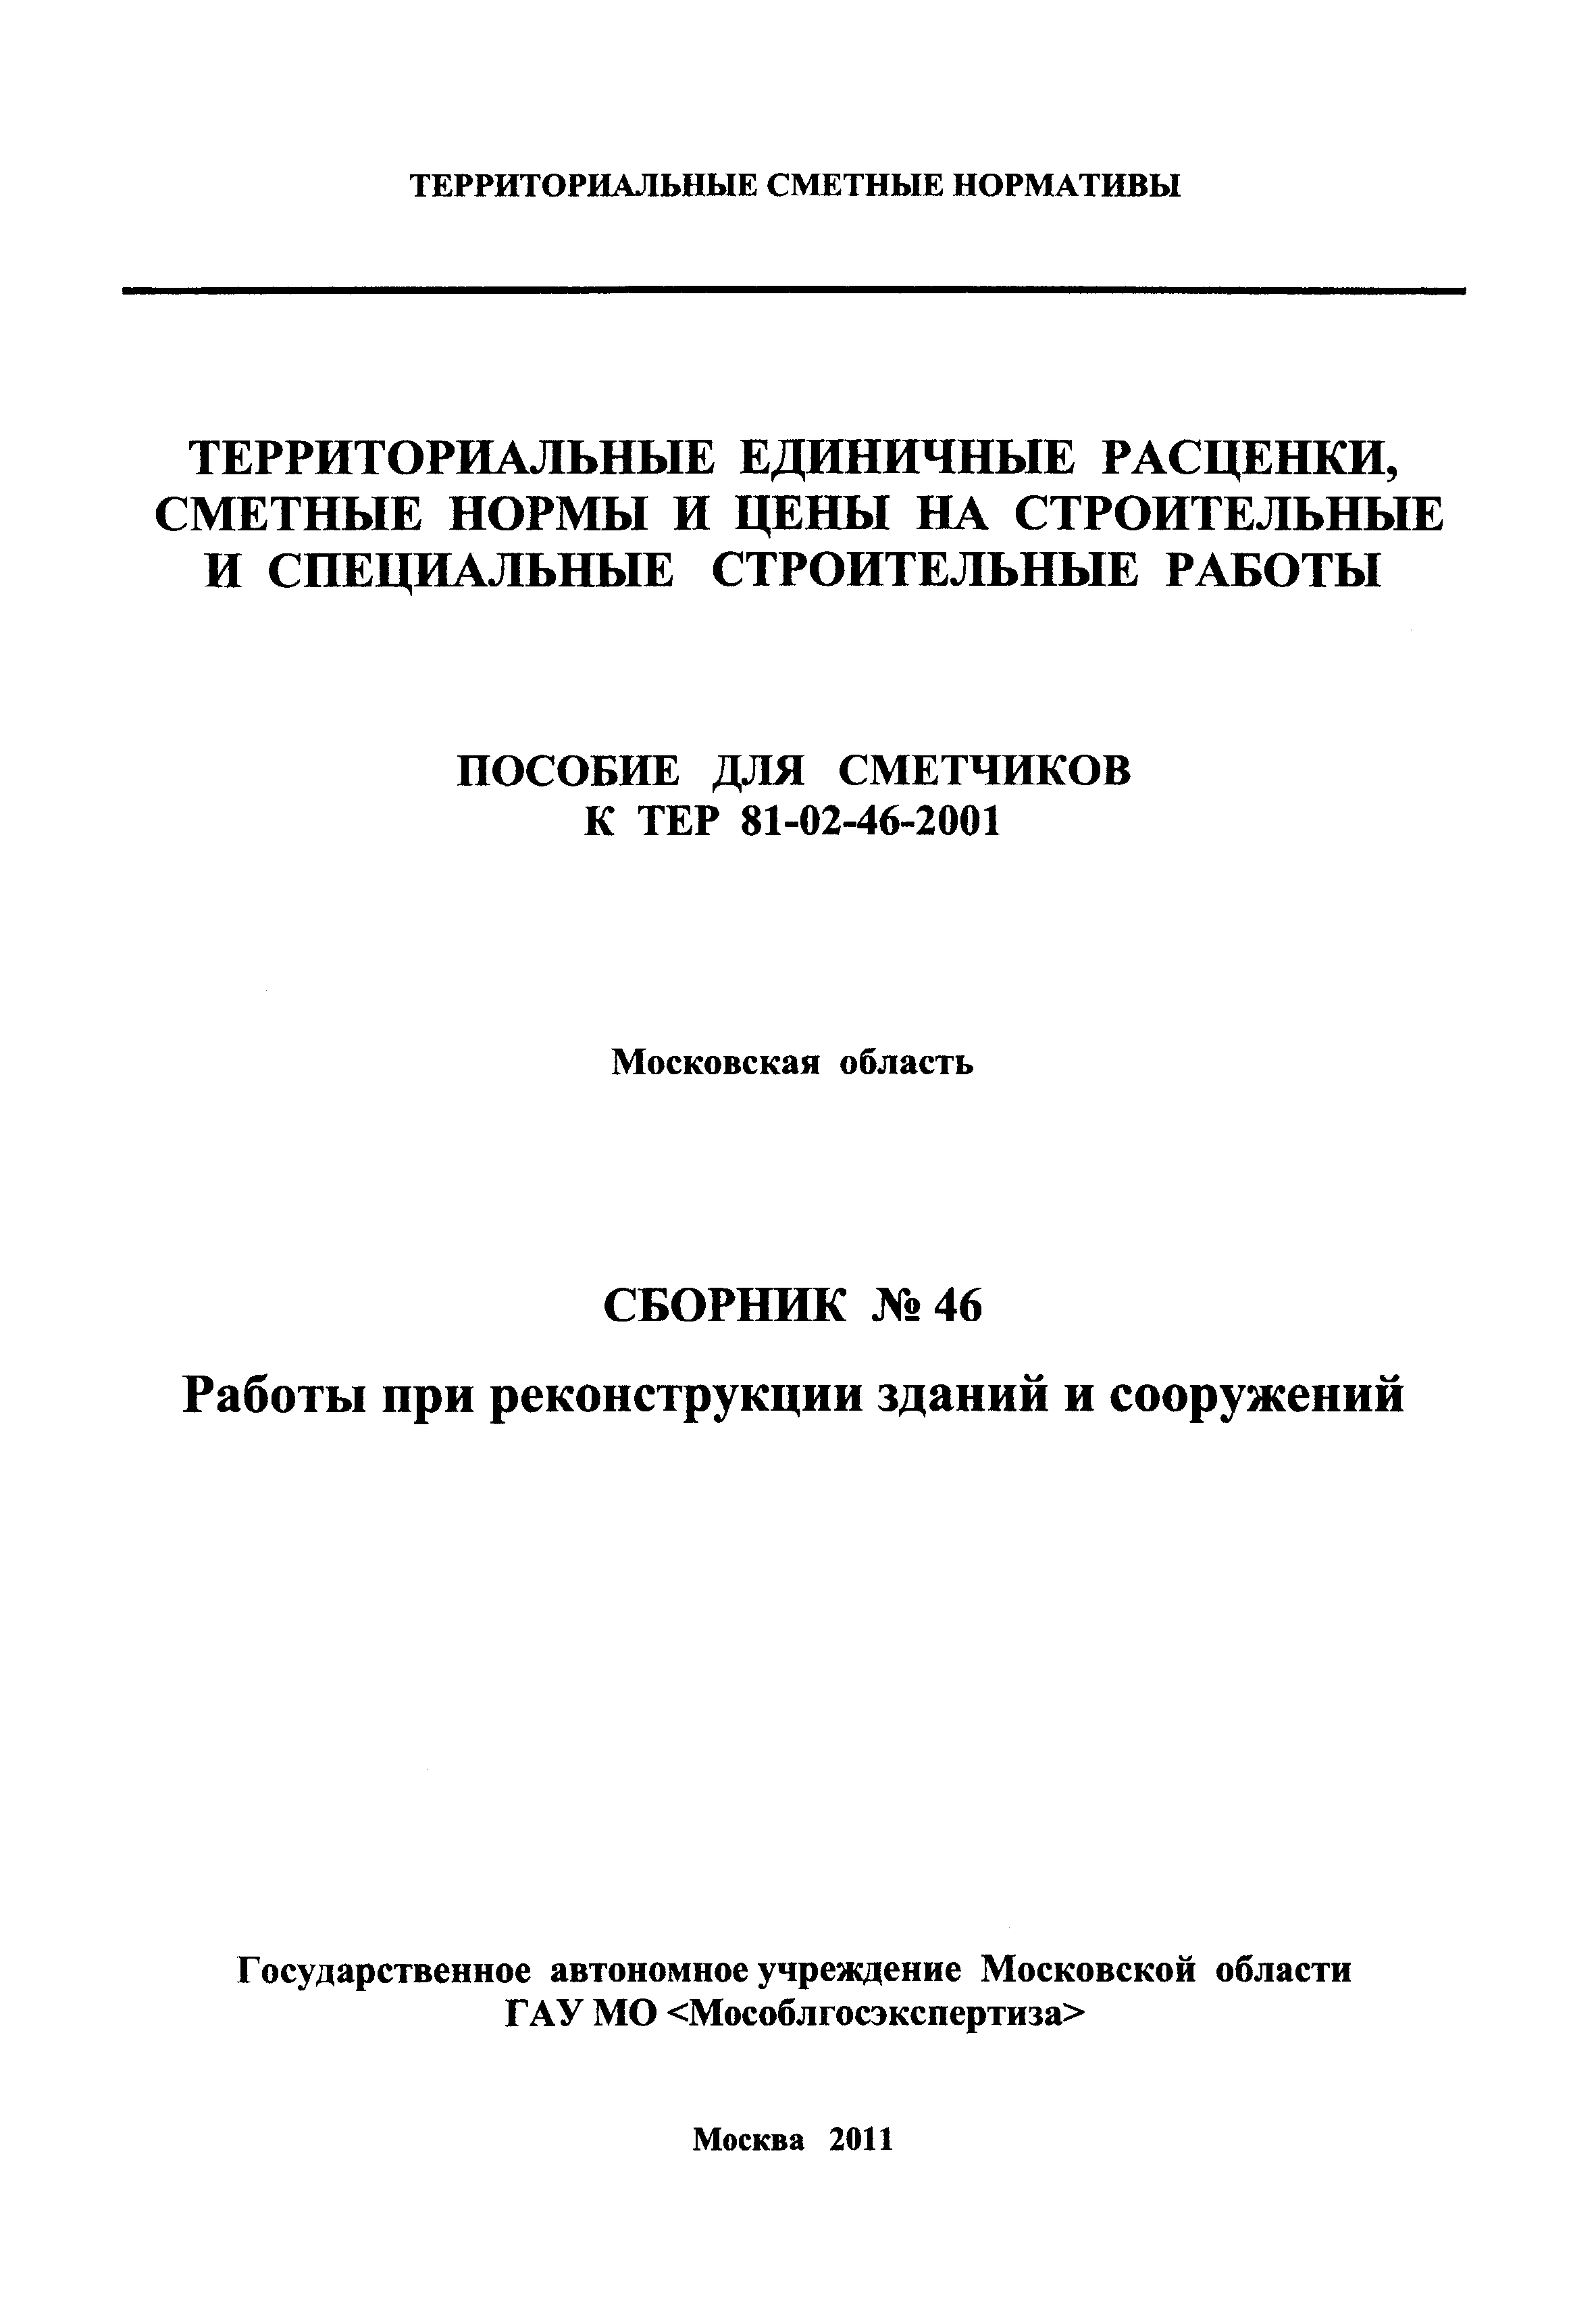 ГЭСНПиТЕР 2001-46 Московской области